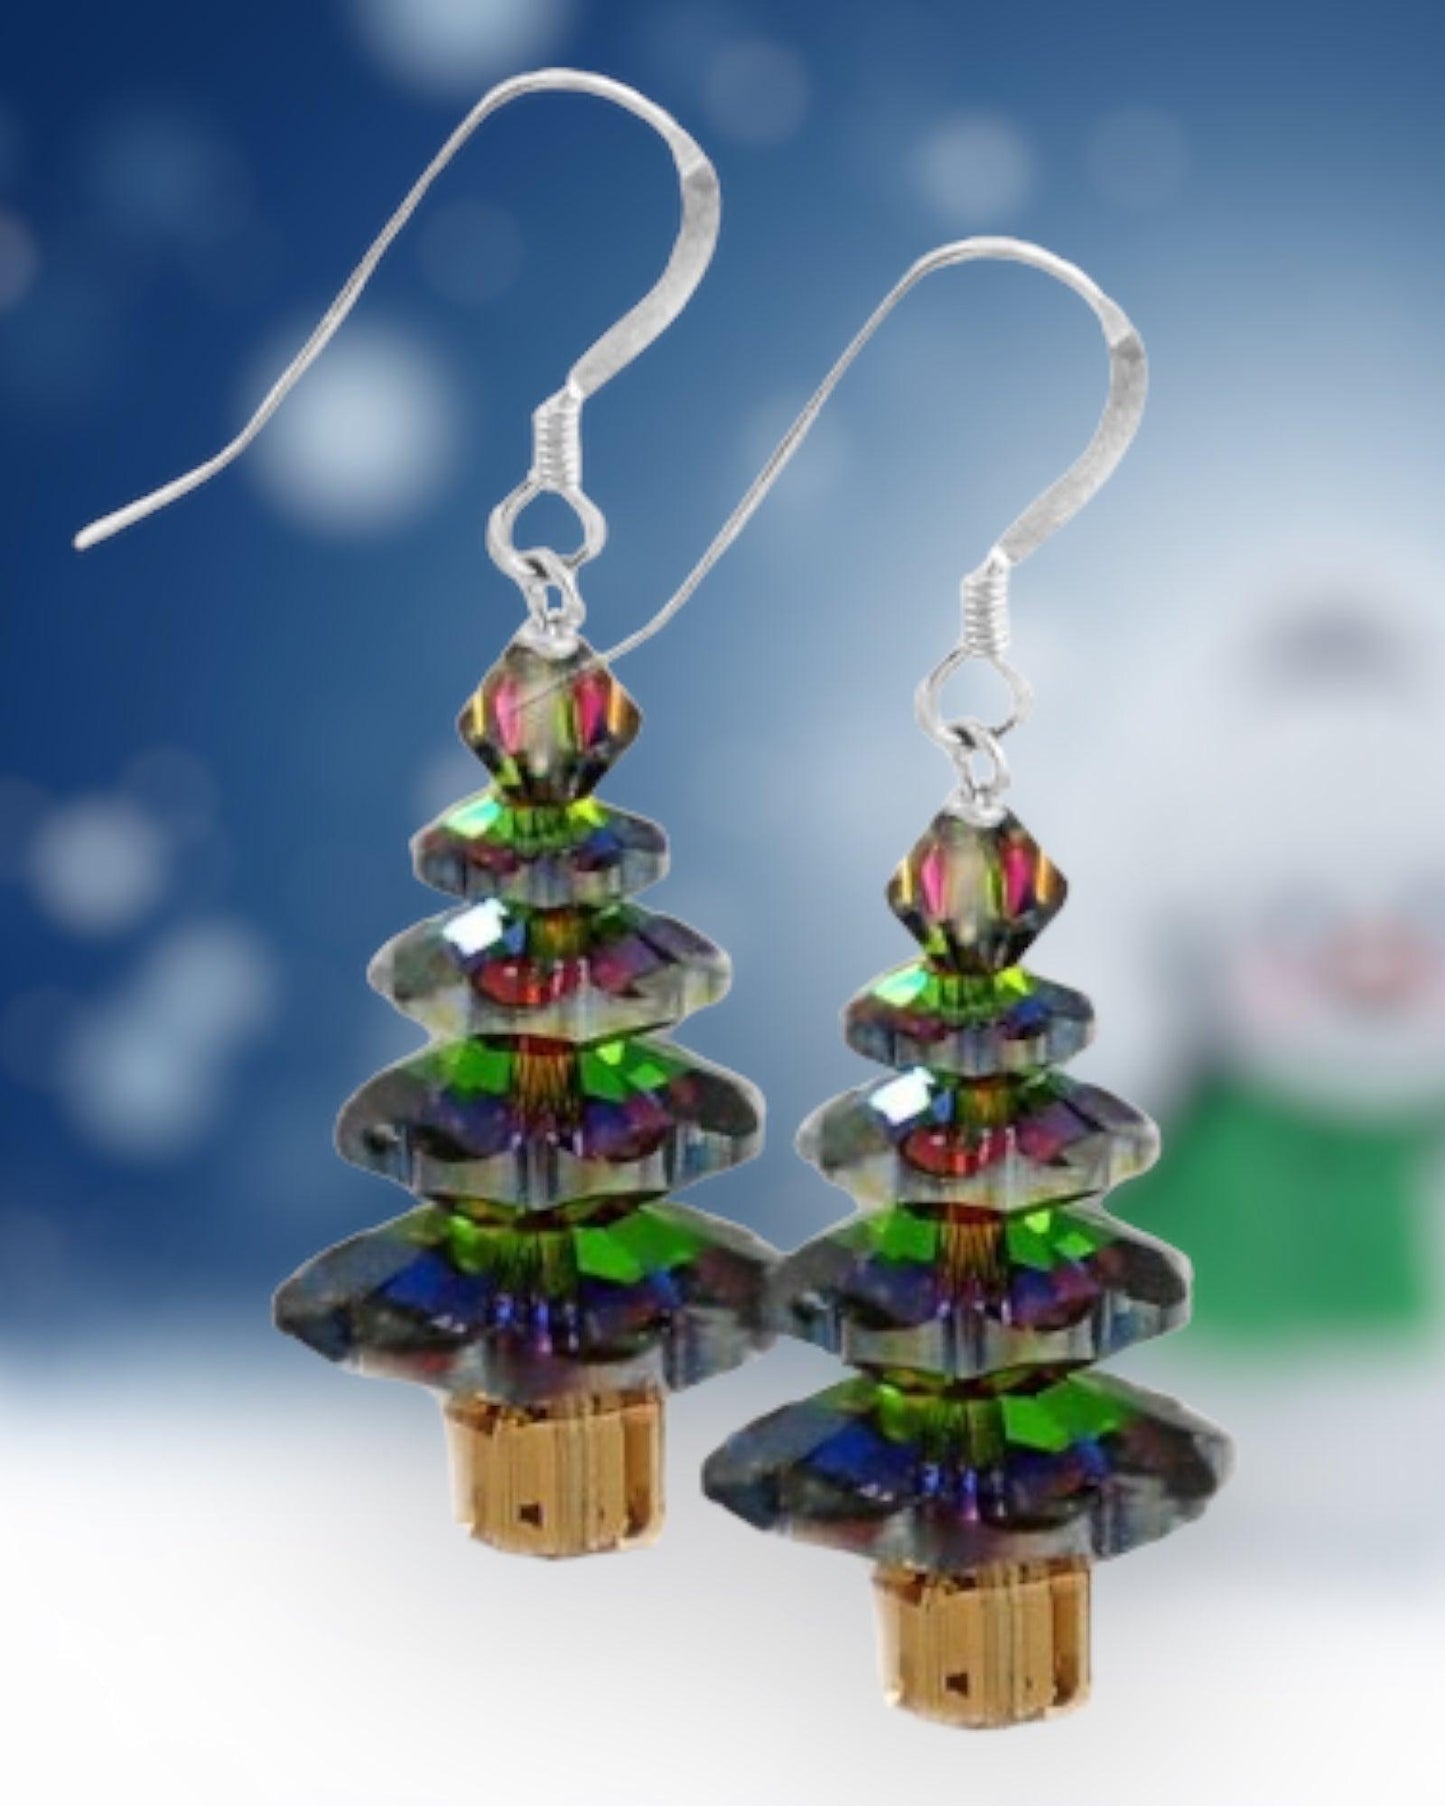 Swarovski Crystal Vitrail Medium Christmas Tree Earring Kit - Too Cute Beads